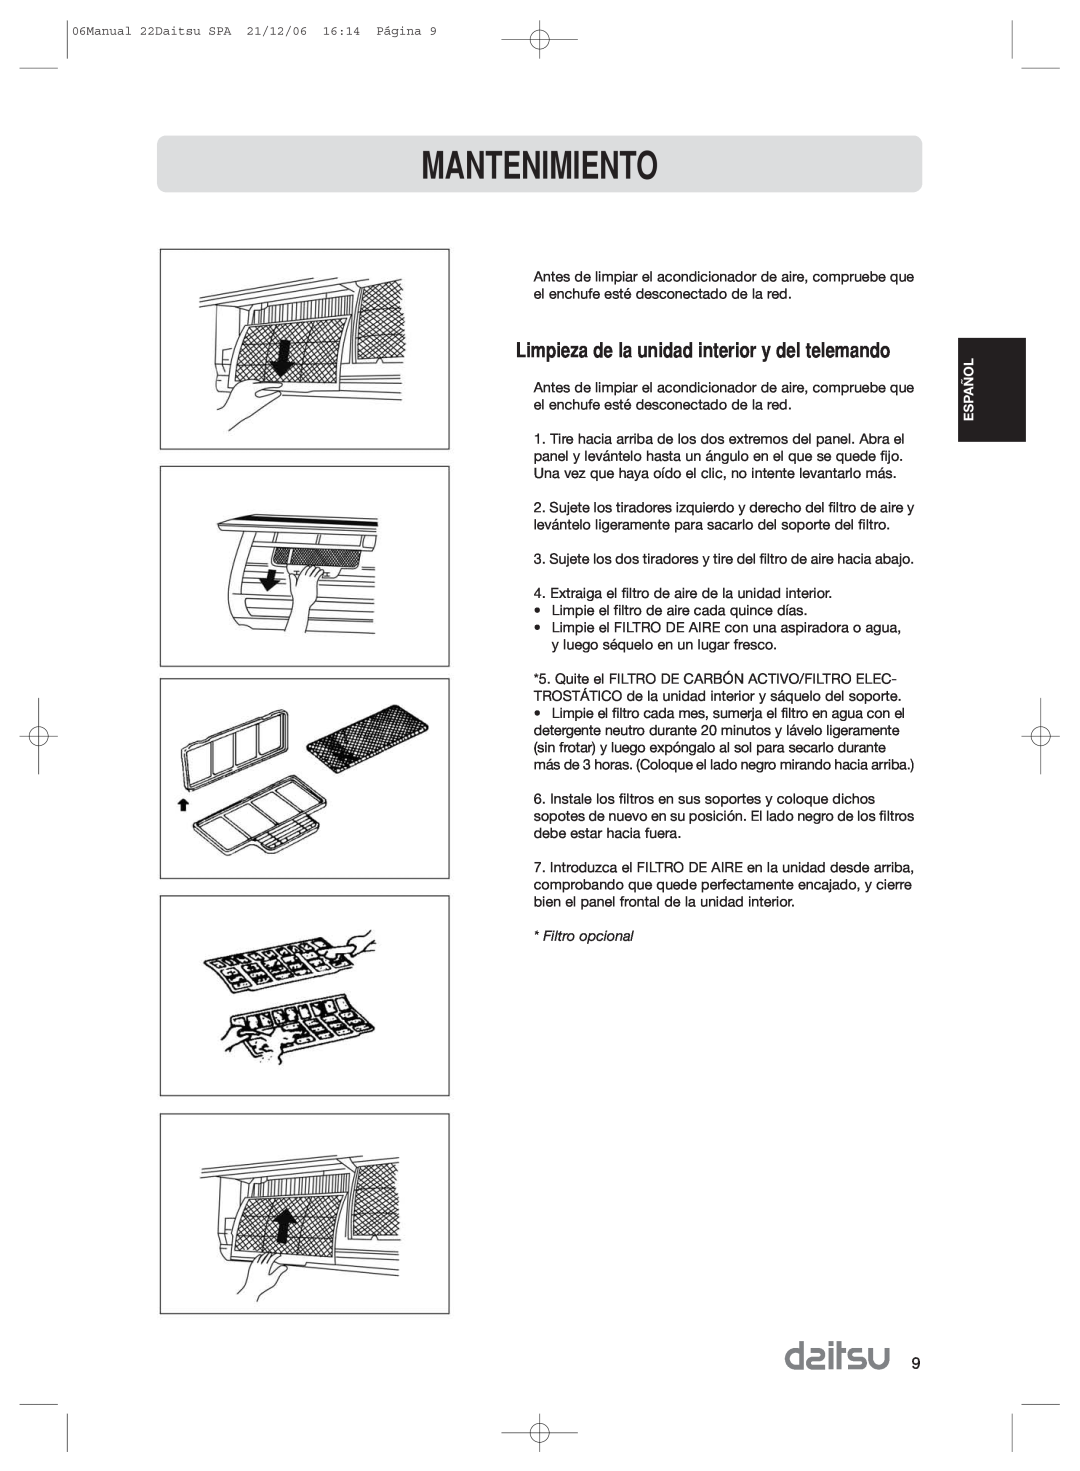 Daitsu ASD 129U11, ASD 9U2 operation manual Mantenimiento, Limpieza de la unidad interior y del telemando, Filtro opcional 